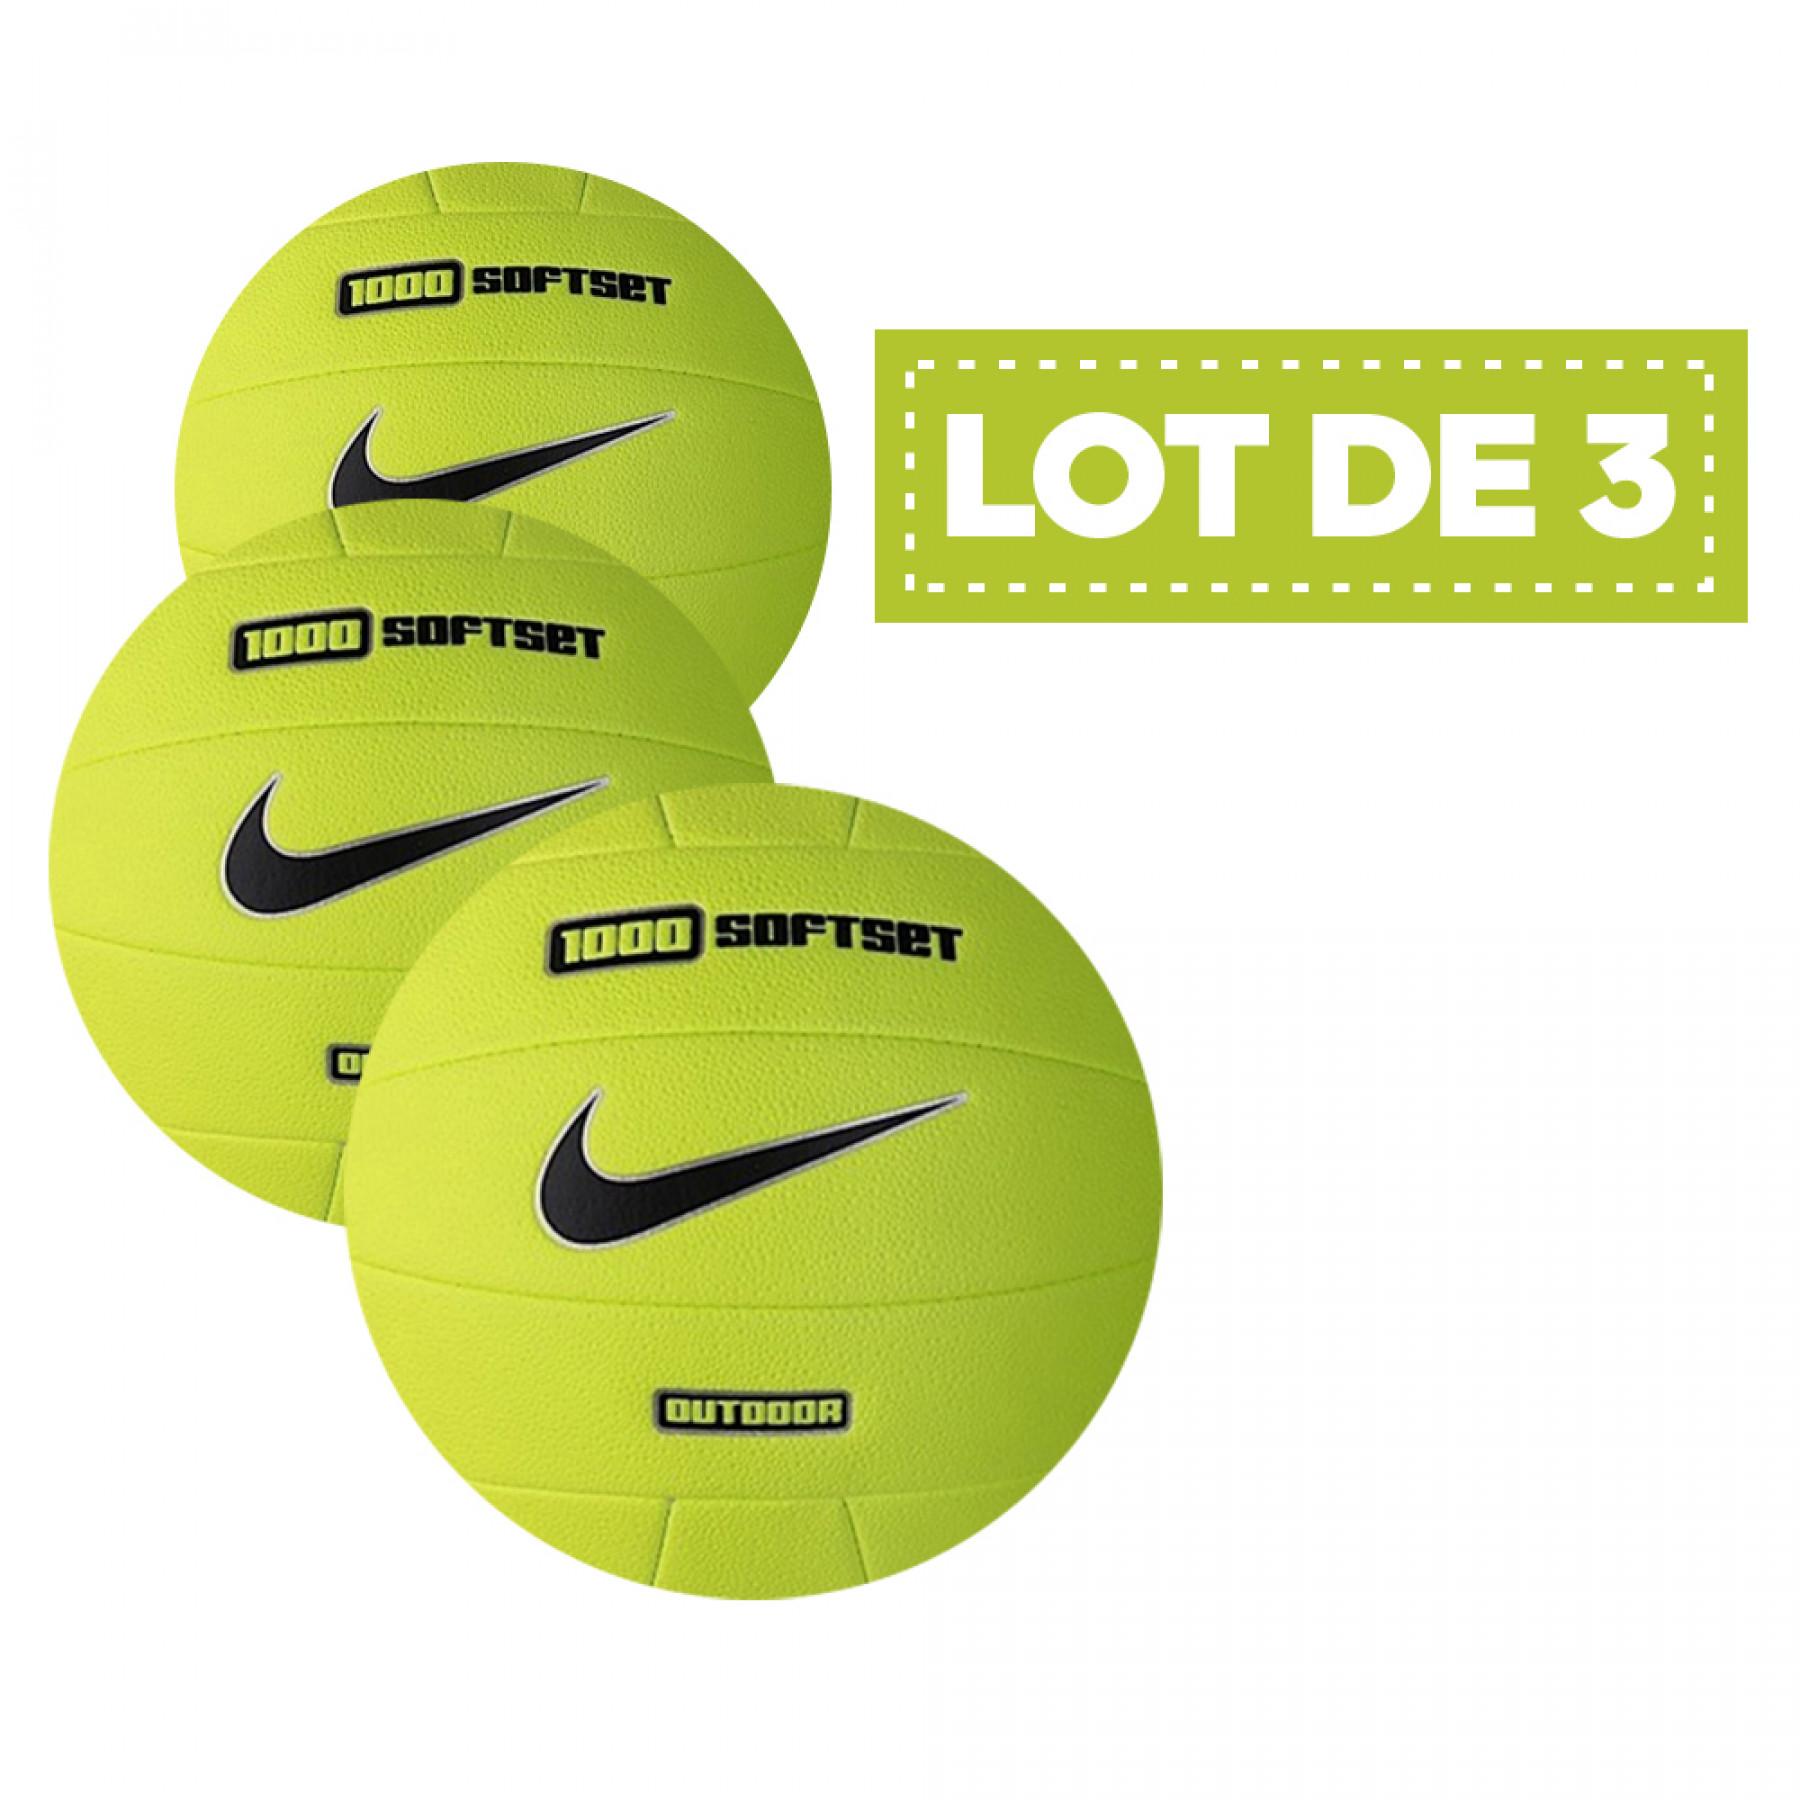 Lot de 3 ballons Nike 1000 softset outdoor jaune fluo